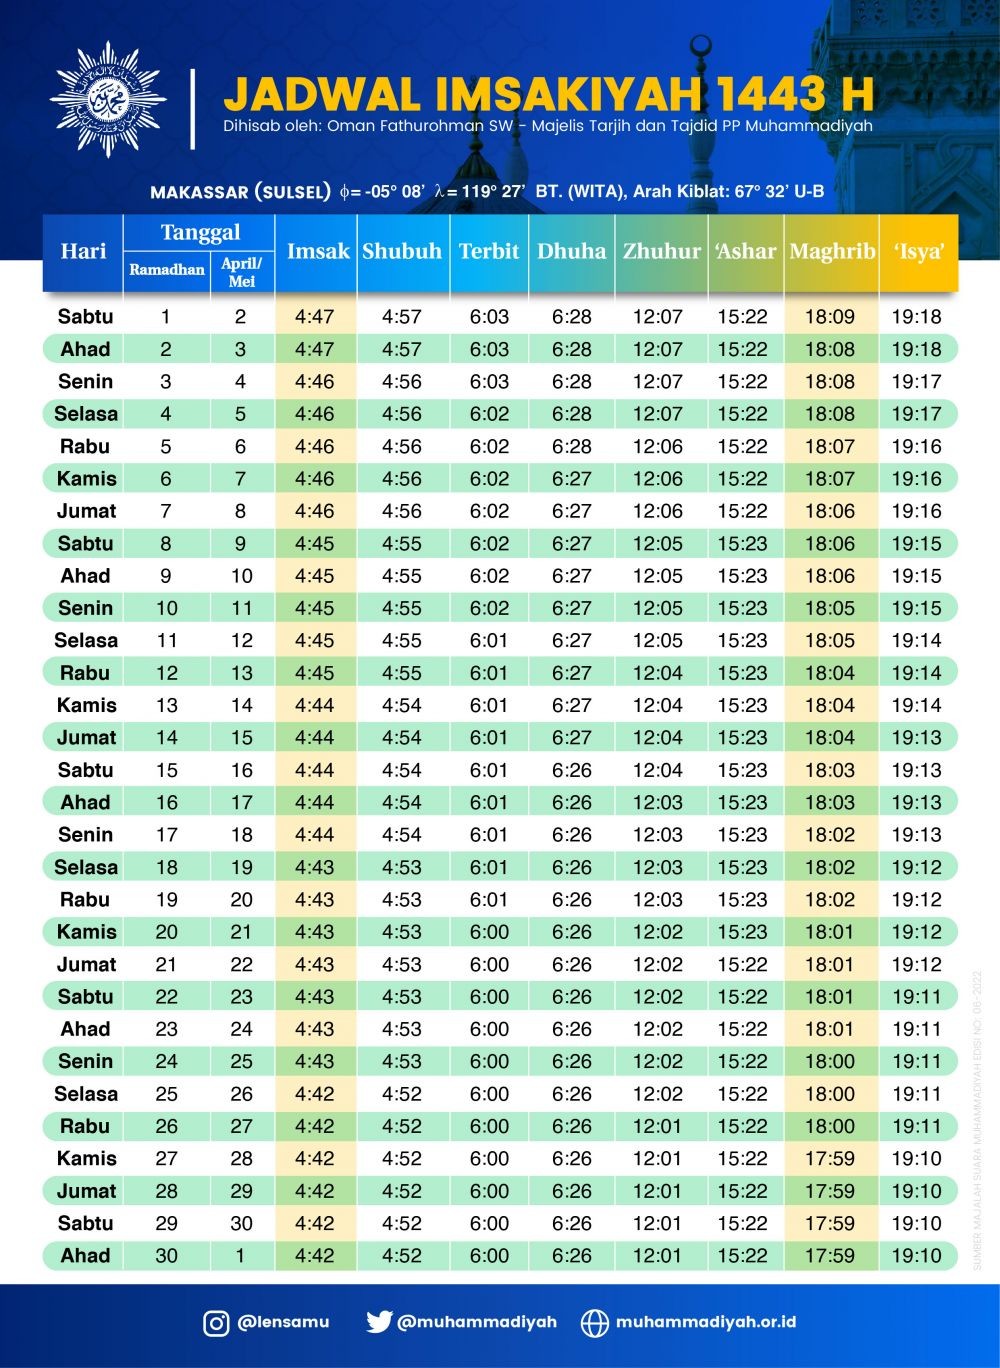 Jadwal Imsakiyah Ramadan 1443 H Makassar dan Sekitarnya Hari Ini